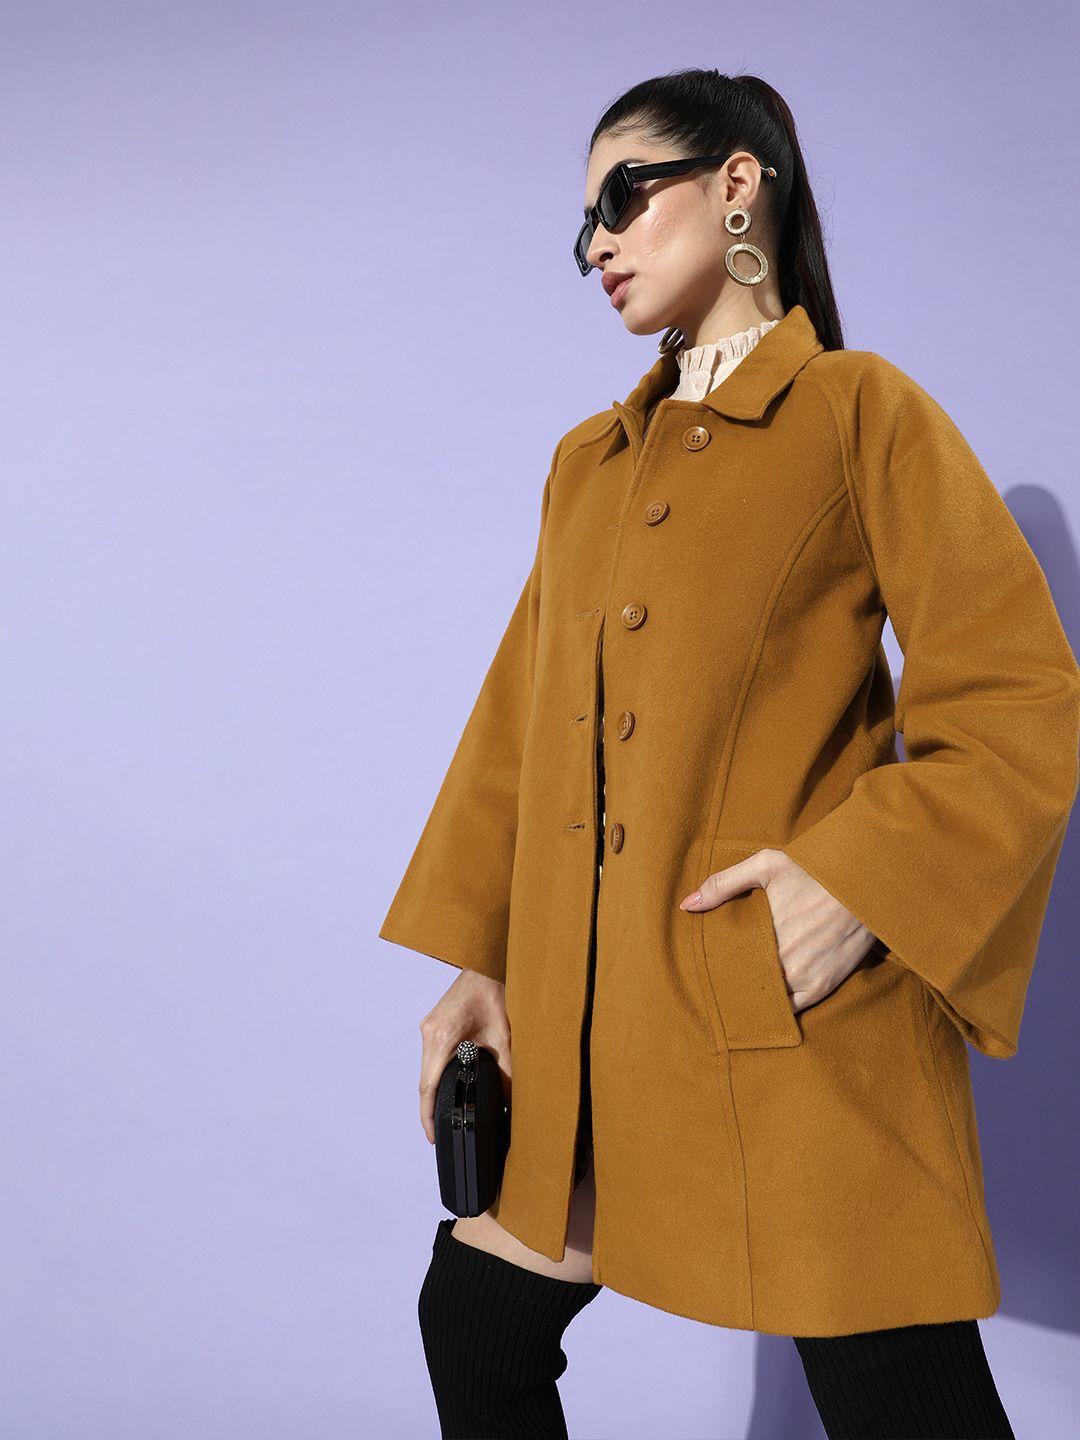 zink-london-women-tan-brown-solid-overcoat